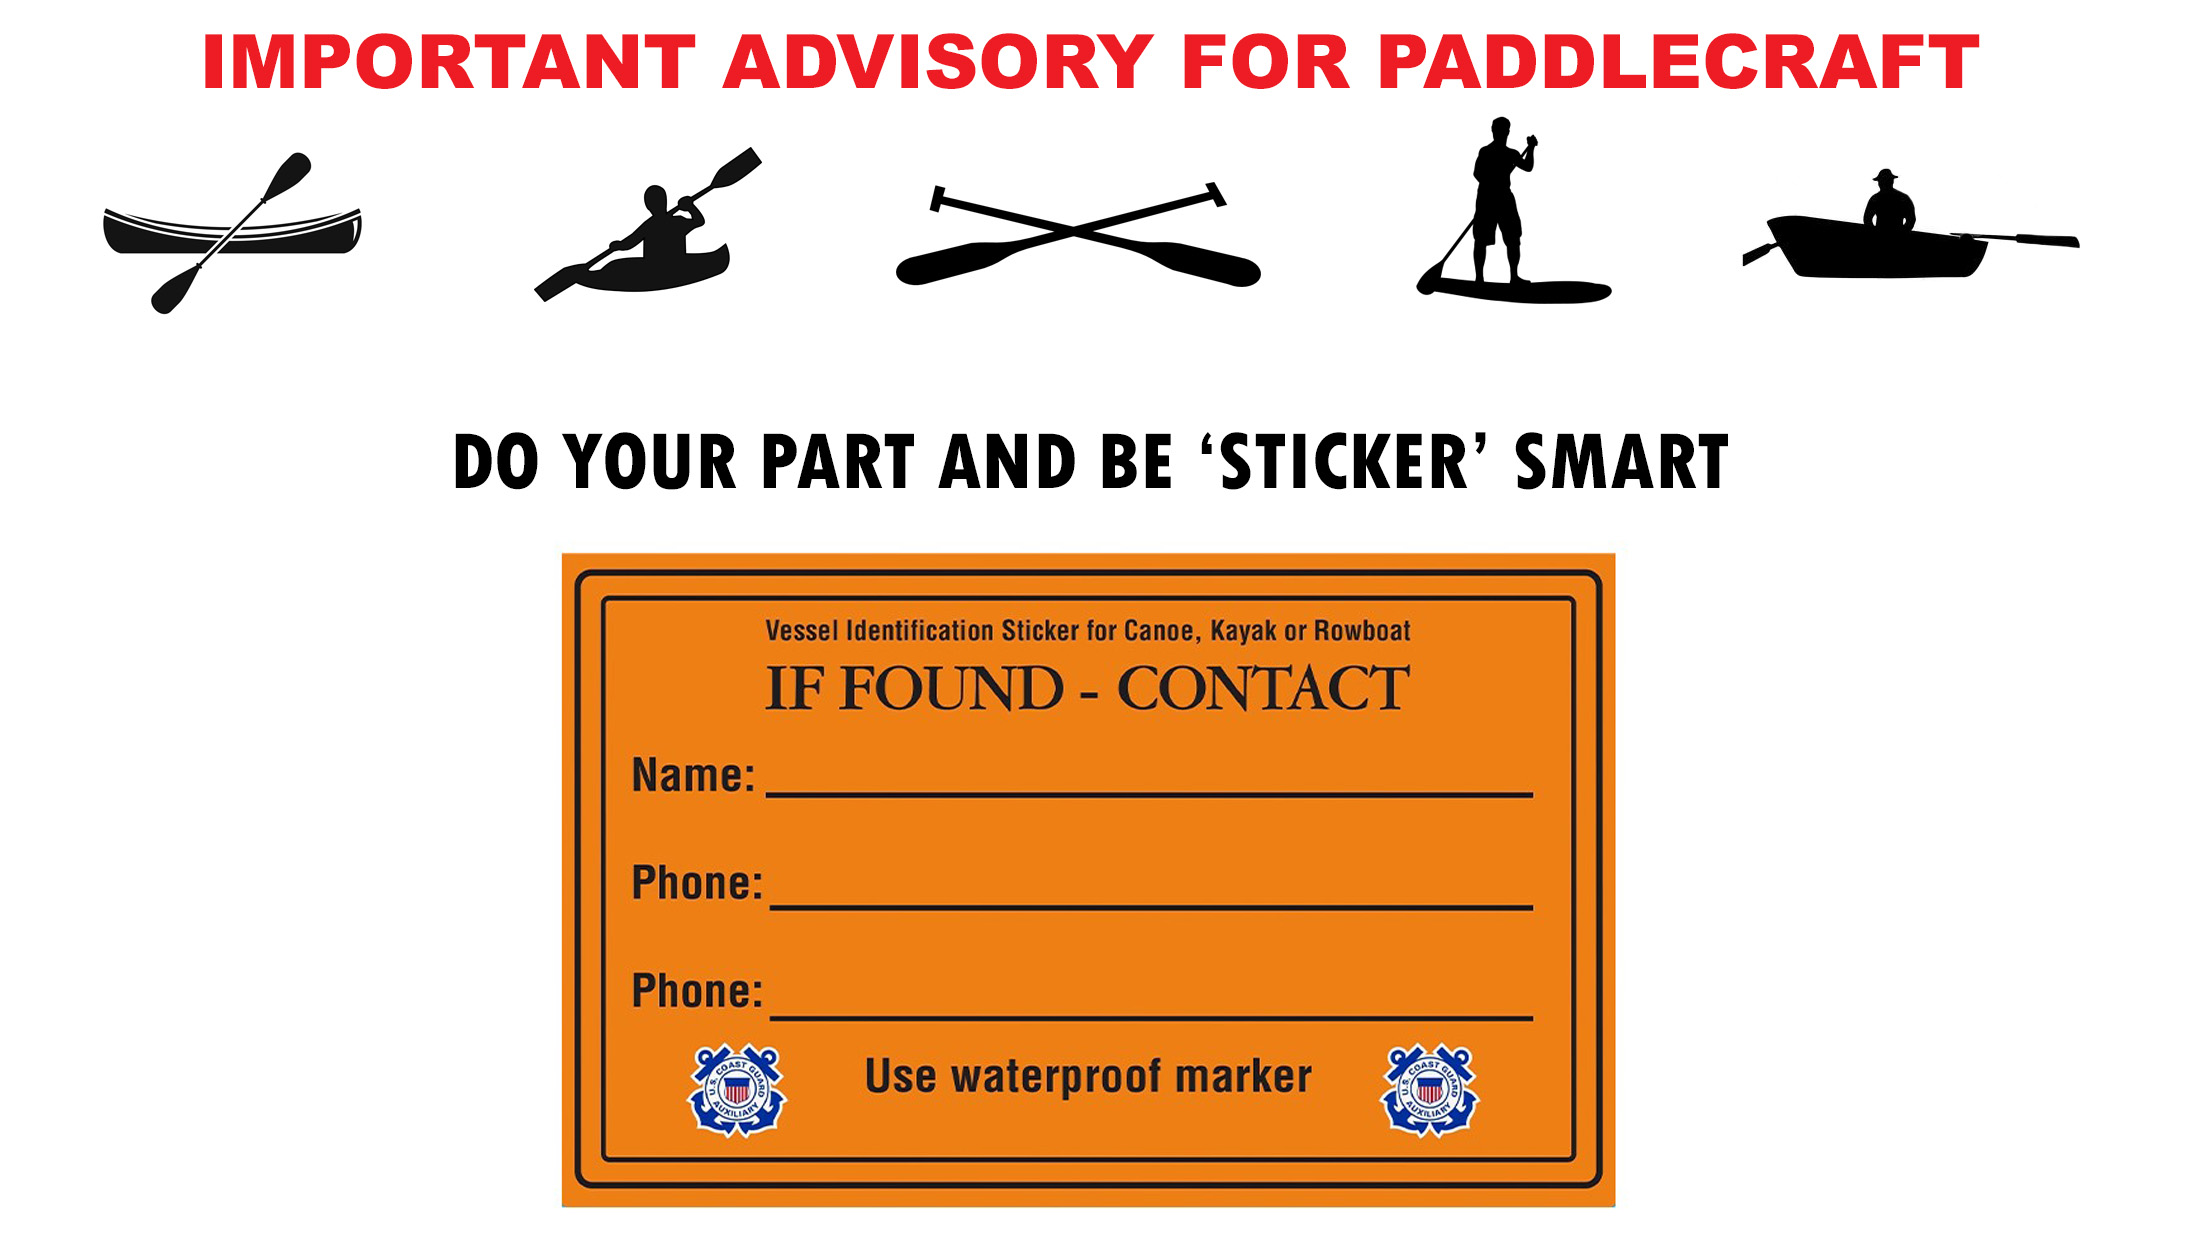 If found paddlecraft sticker